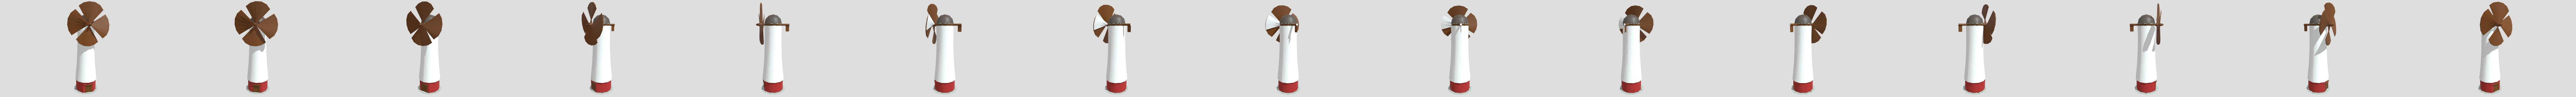 Moinho de vento Modelo 3D - TurboSquid 769211